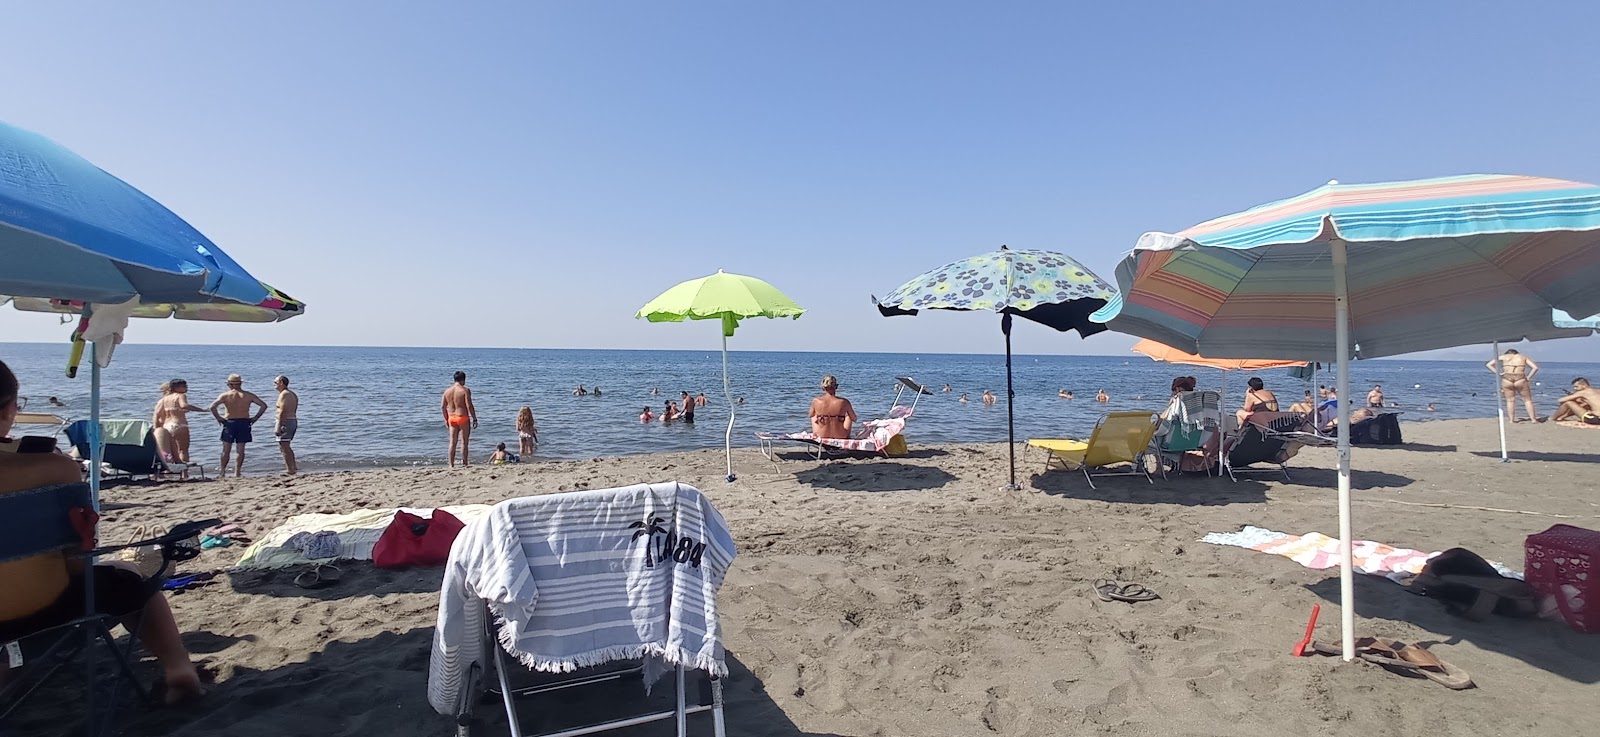 Foto av Spiaggia di Costa Selvaggia med blå rent vatten yta